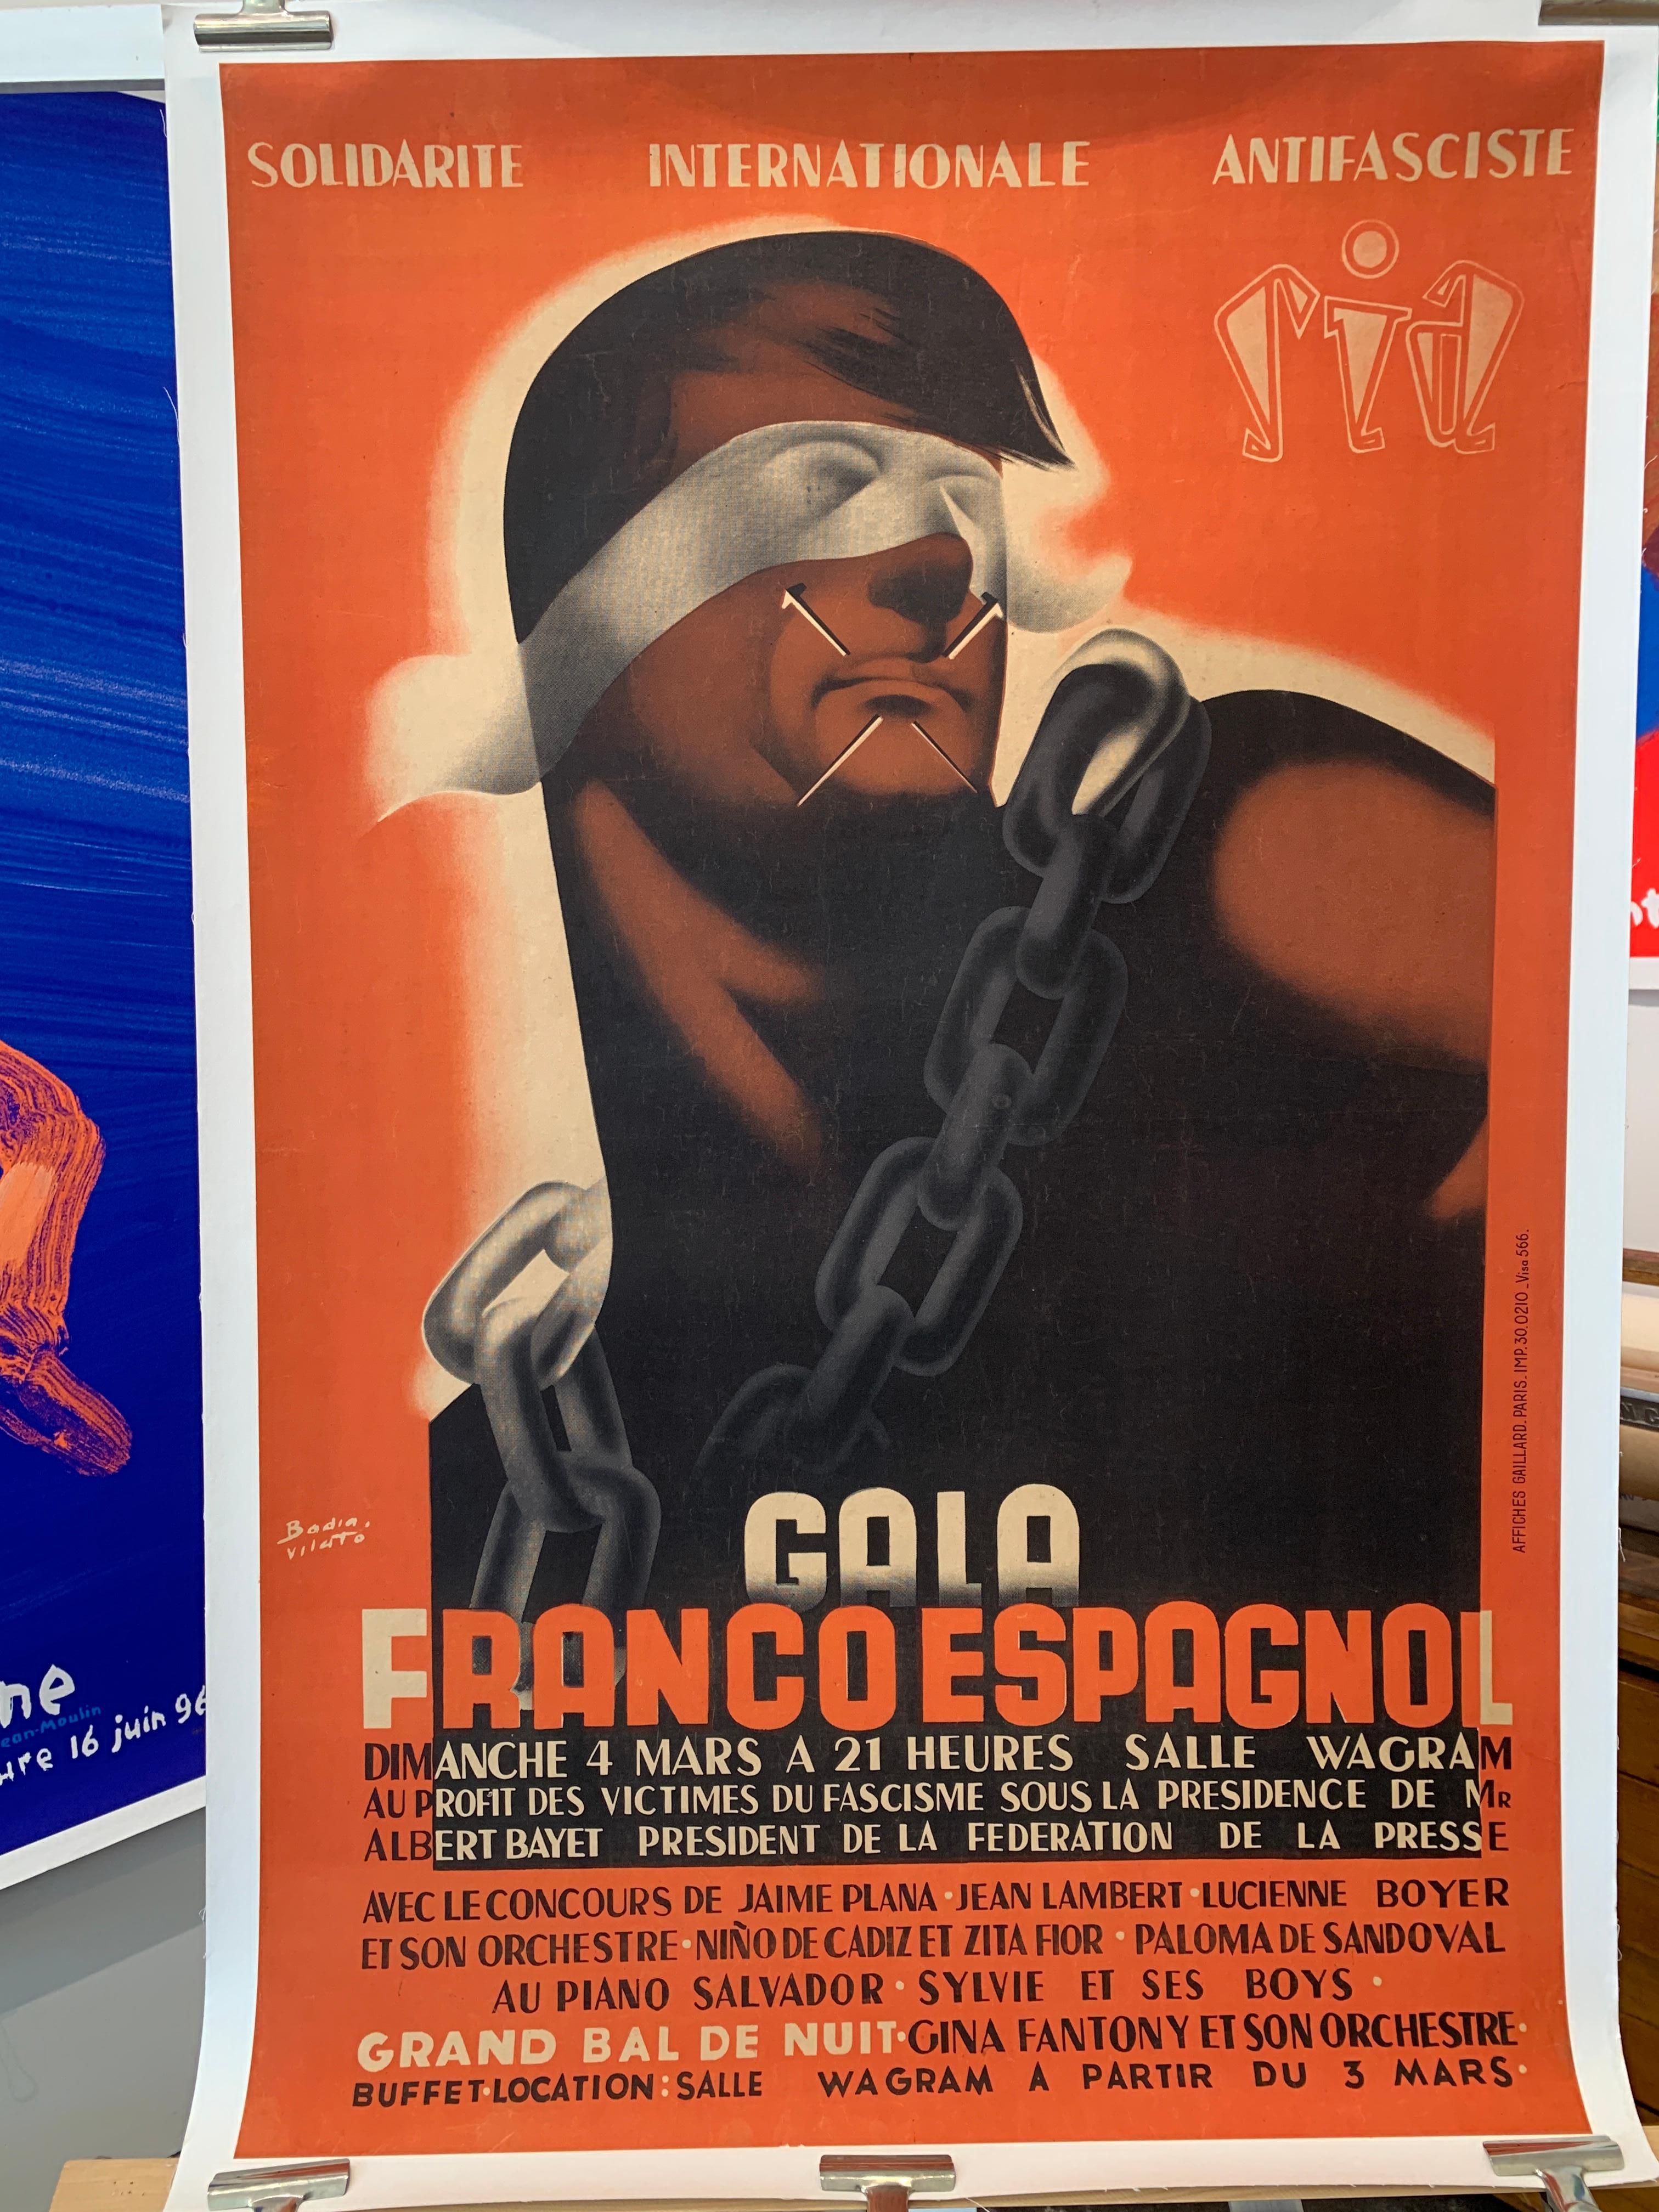 Cartel Político Original Vintage, 'GALA FRANCO ESPAGNOL

Se trata de un cartel original de época que representa a Francisco Franco, que dirigió a las fuerzas nacionalistas en el derrocamiento de la Segunda República Española durante la Guerra Civil